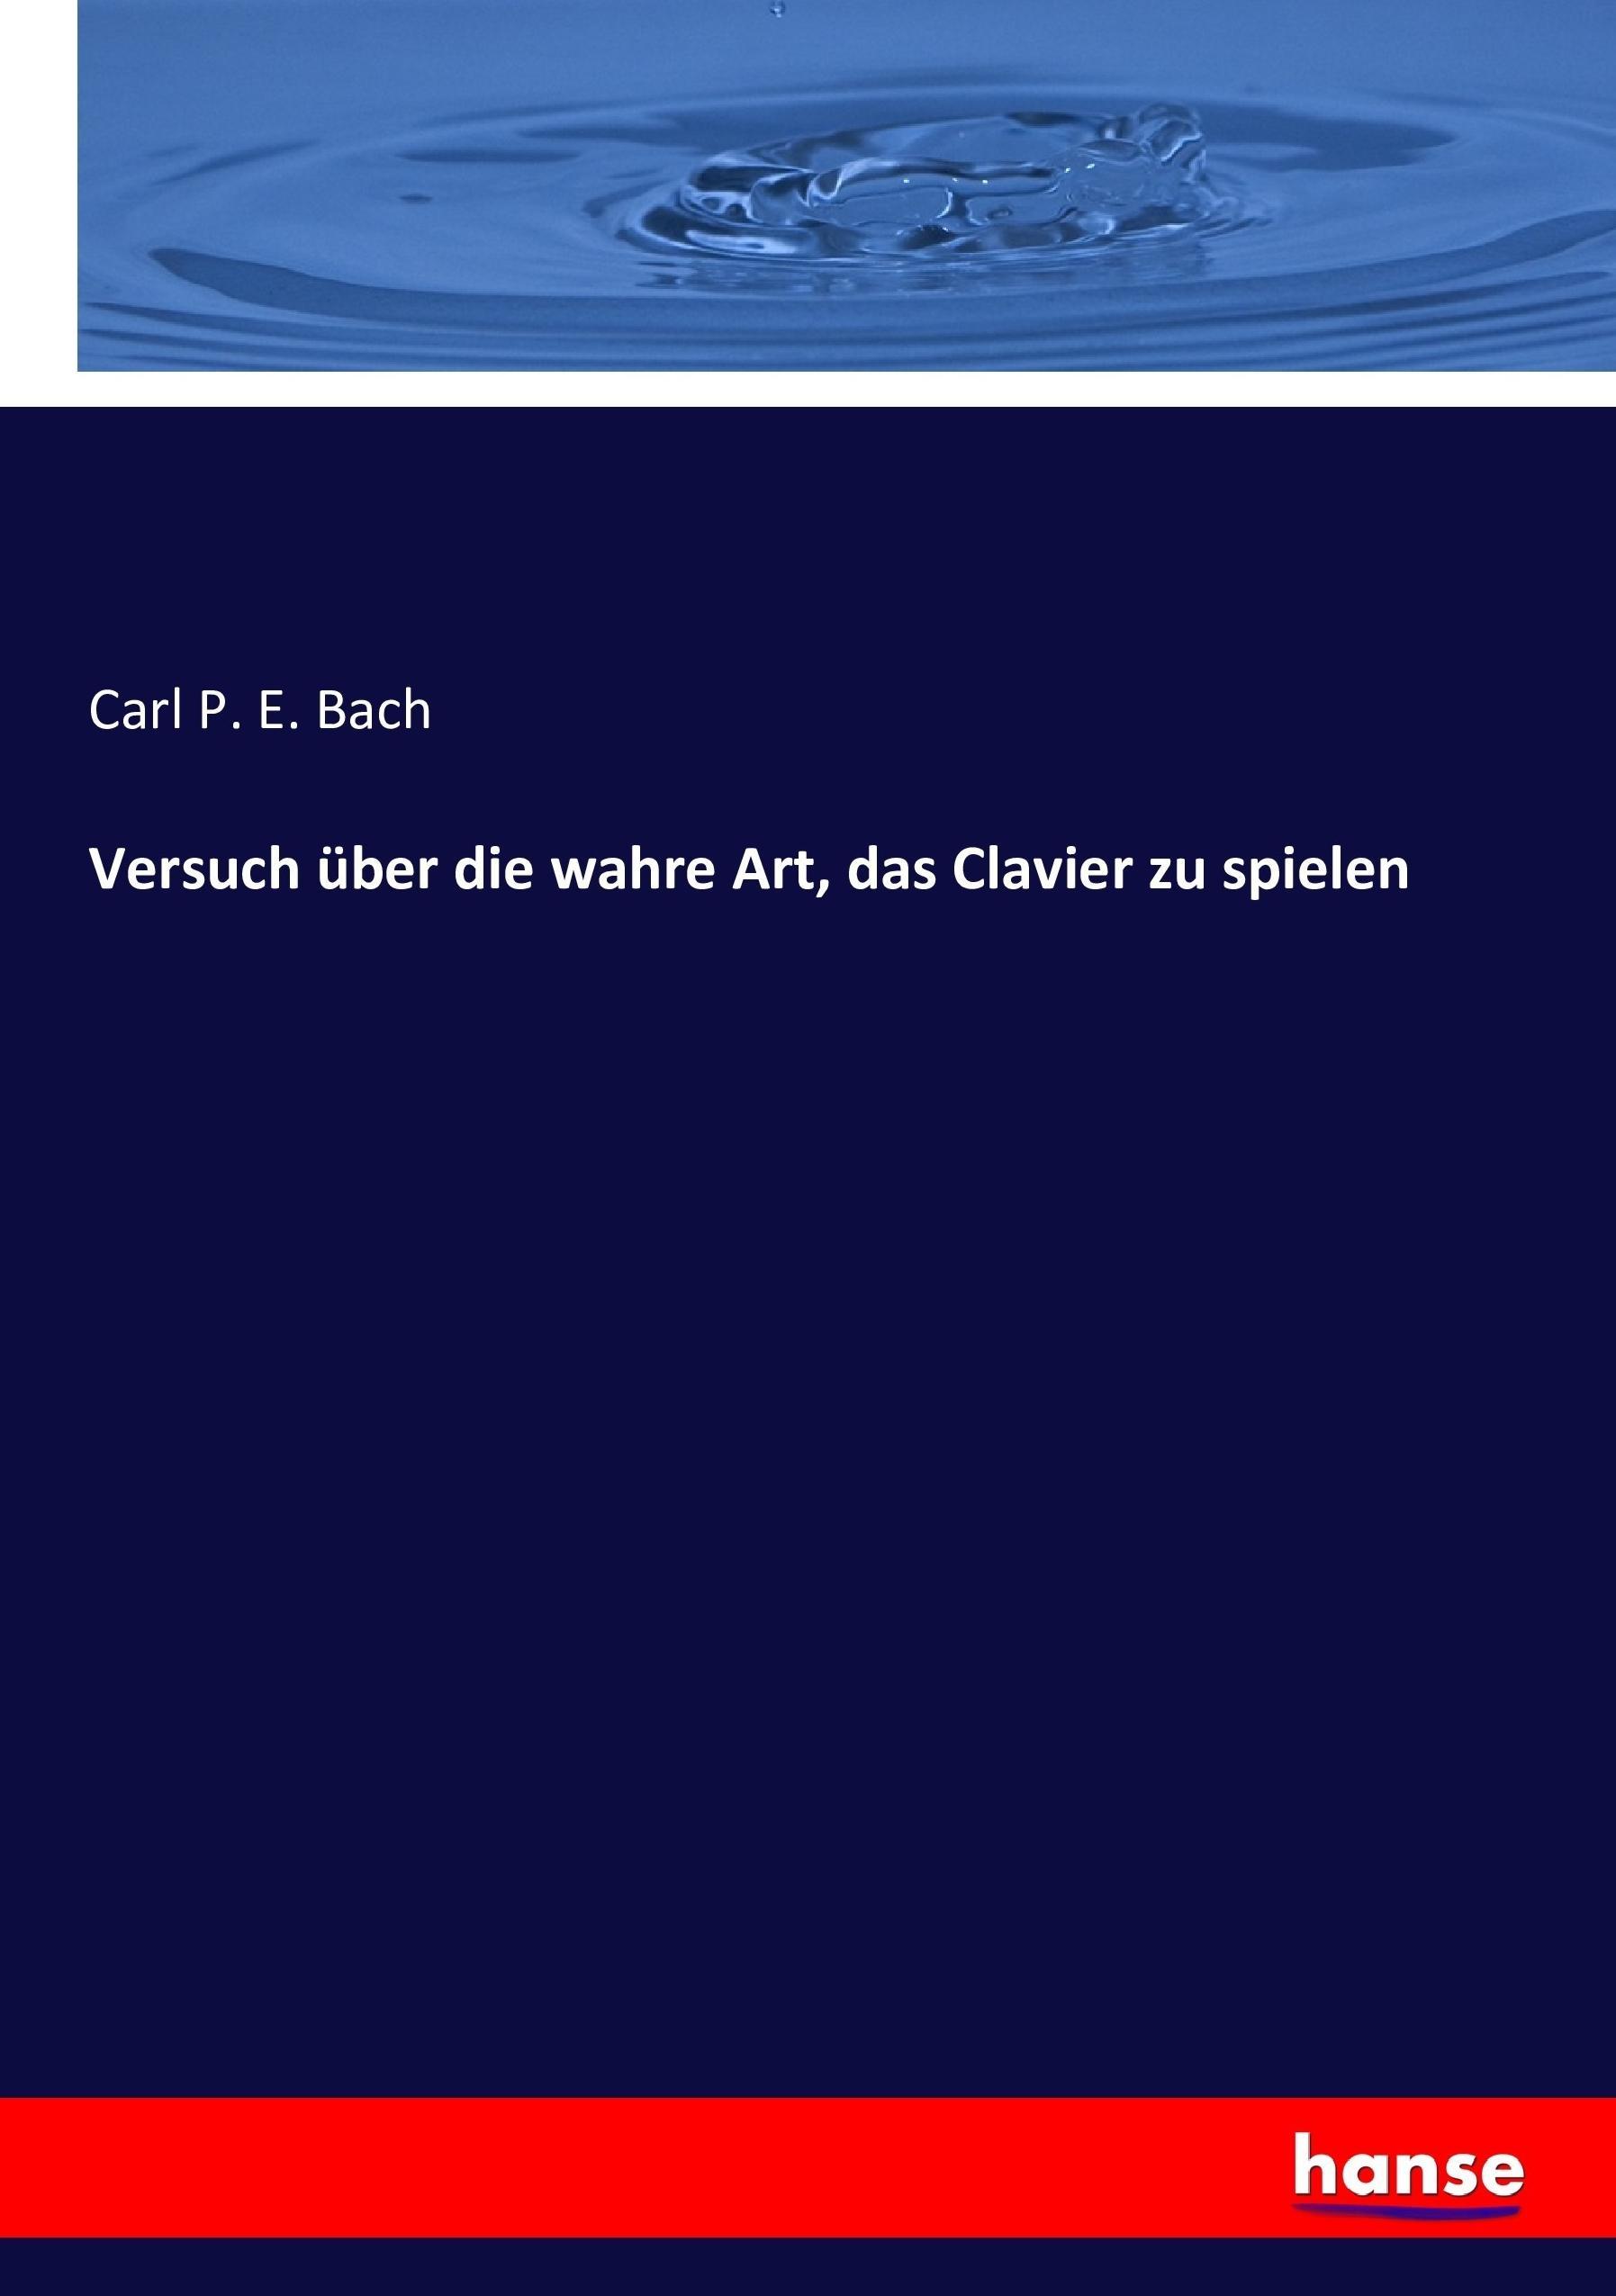 Versuch über die wahre Art, das Clavier zu spielen / Carl P. E. Bach / Taschenbuch / Paperback / 360 S. / Deutsch / 2016 / hansebooks / EAN 9783743610446 - Bach, Carl P. E.